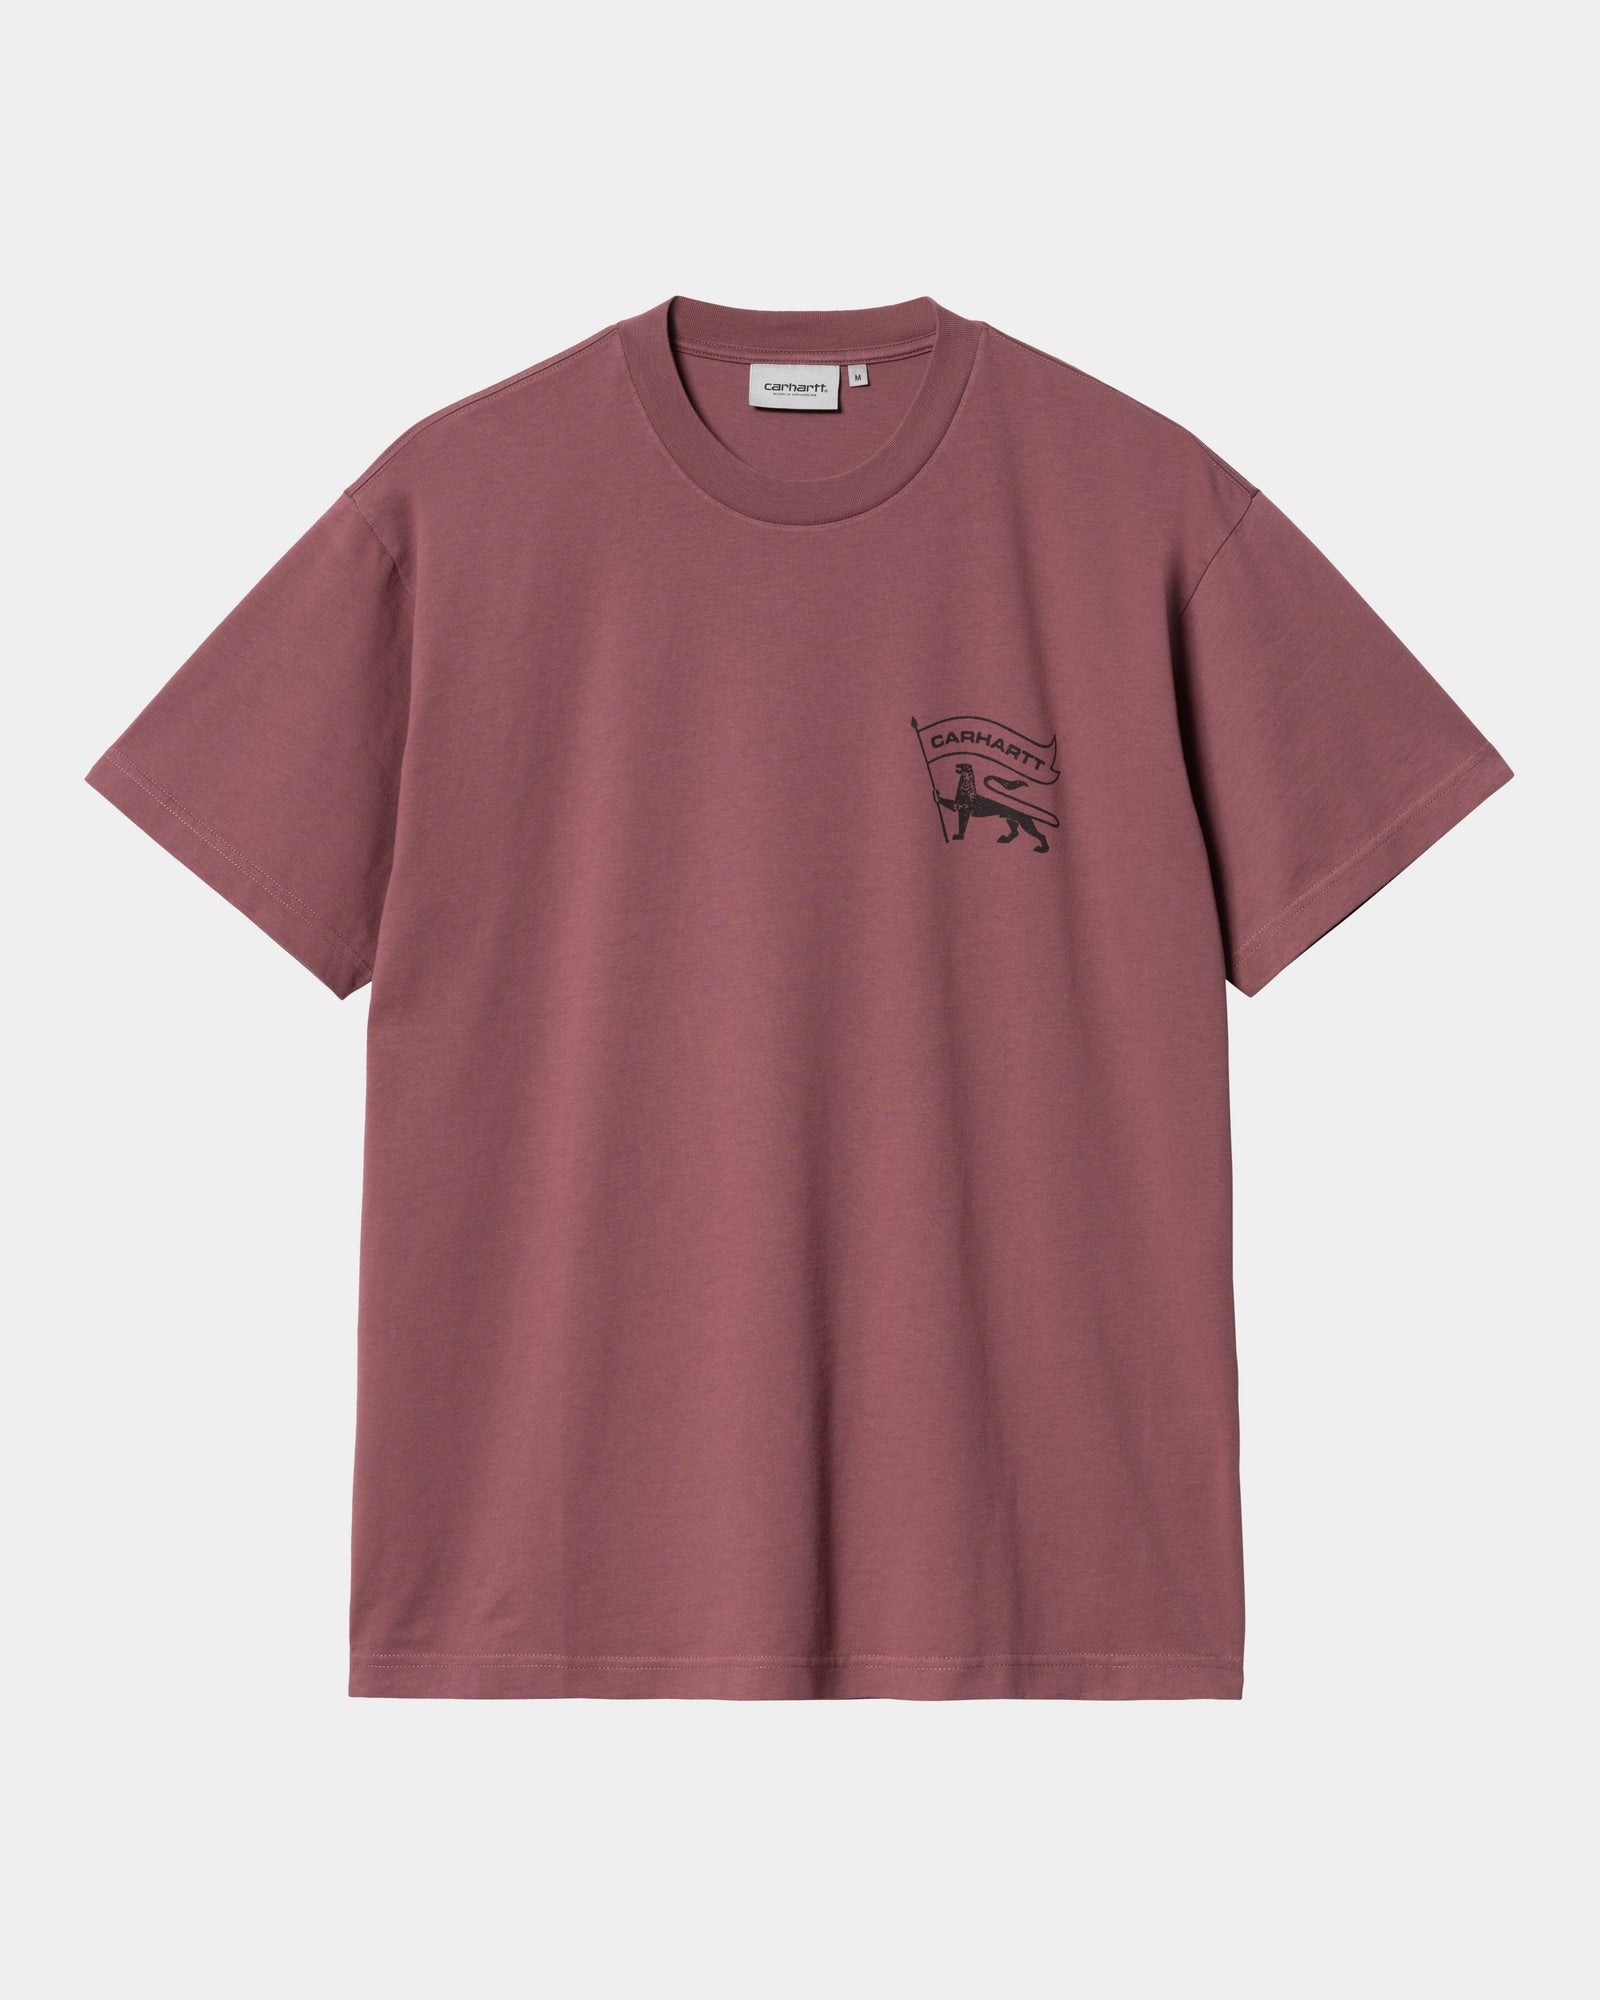 칼하트WIP Carhartt Stamp T-Shirt,Dusty Fuchsia / Black stone washed